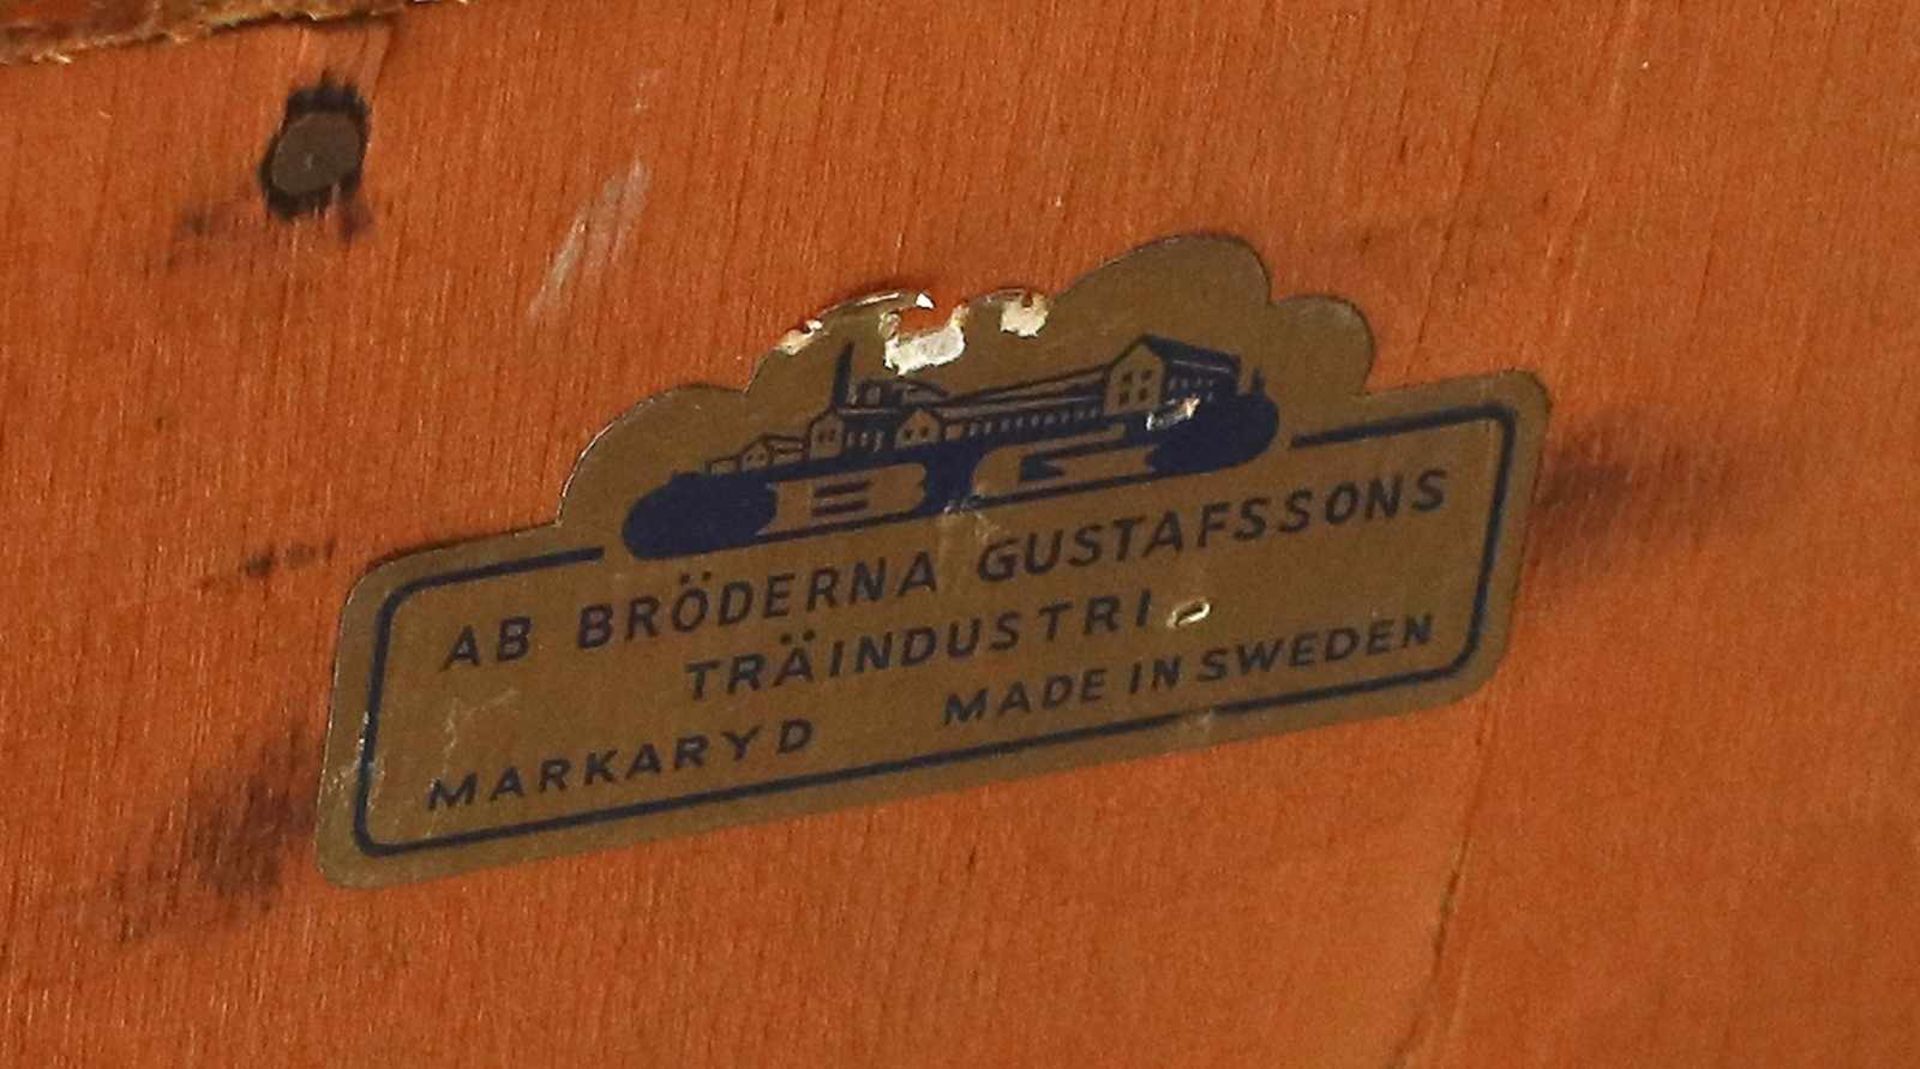 Kleiner Sekretär SchwedenEtikett: "Ab Bröderna Gustafssons Träindustri Markaryd Made in Sweden", - Image 5 of 5